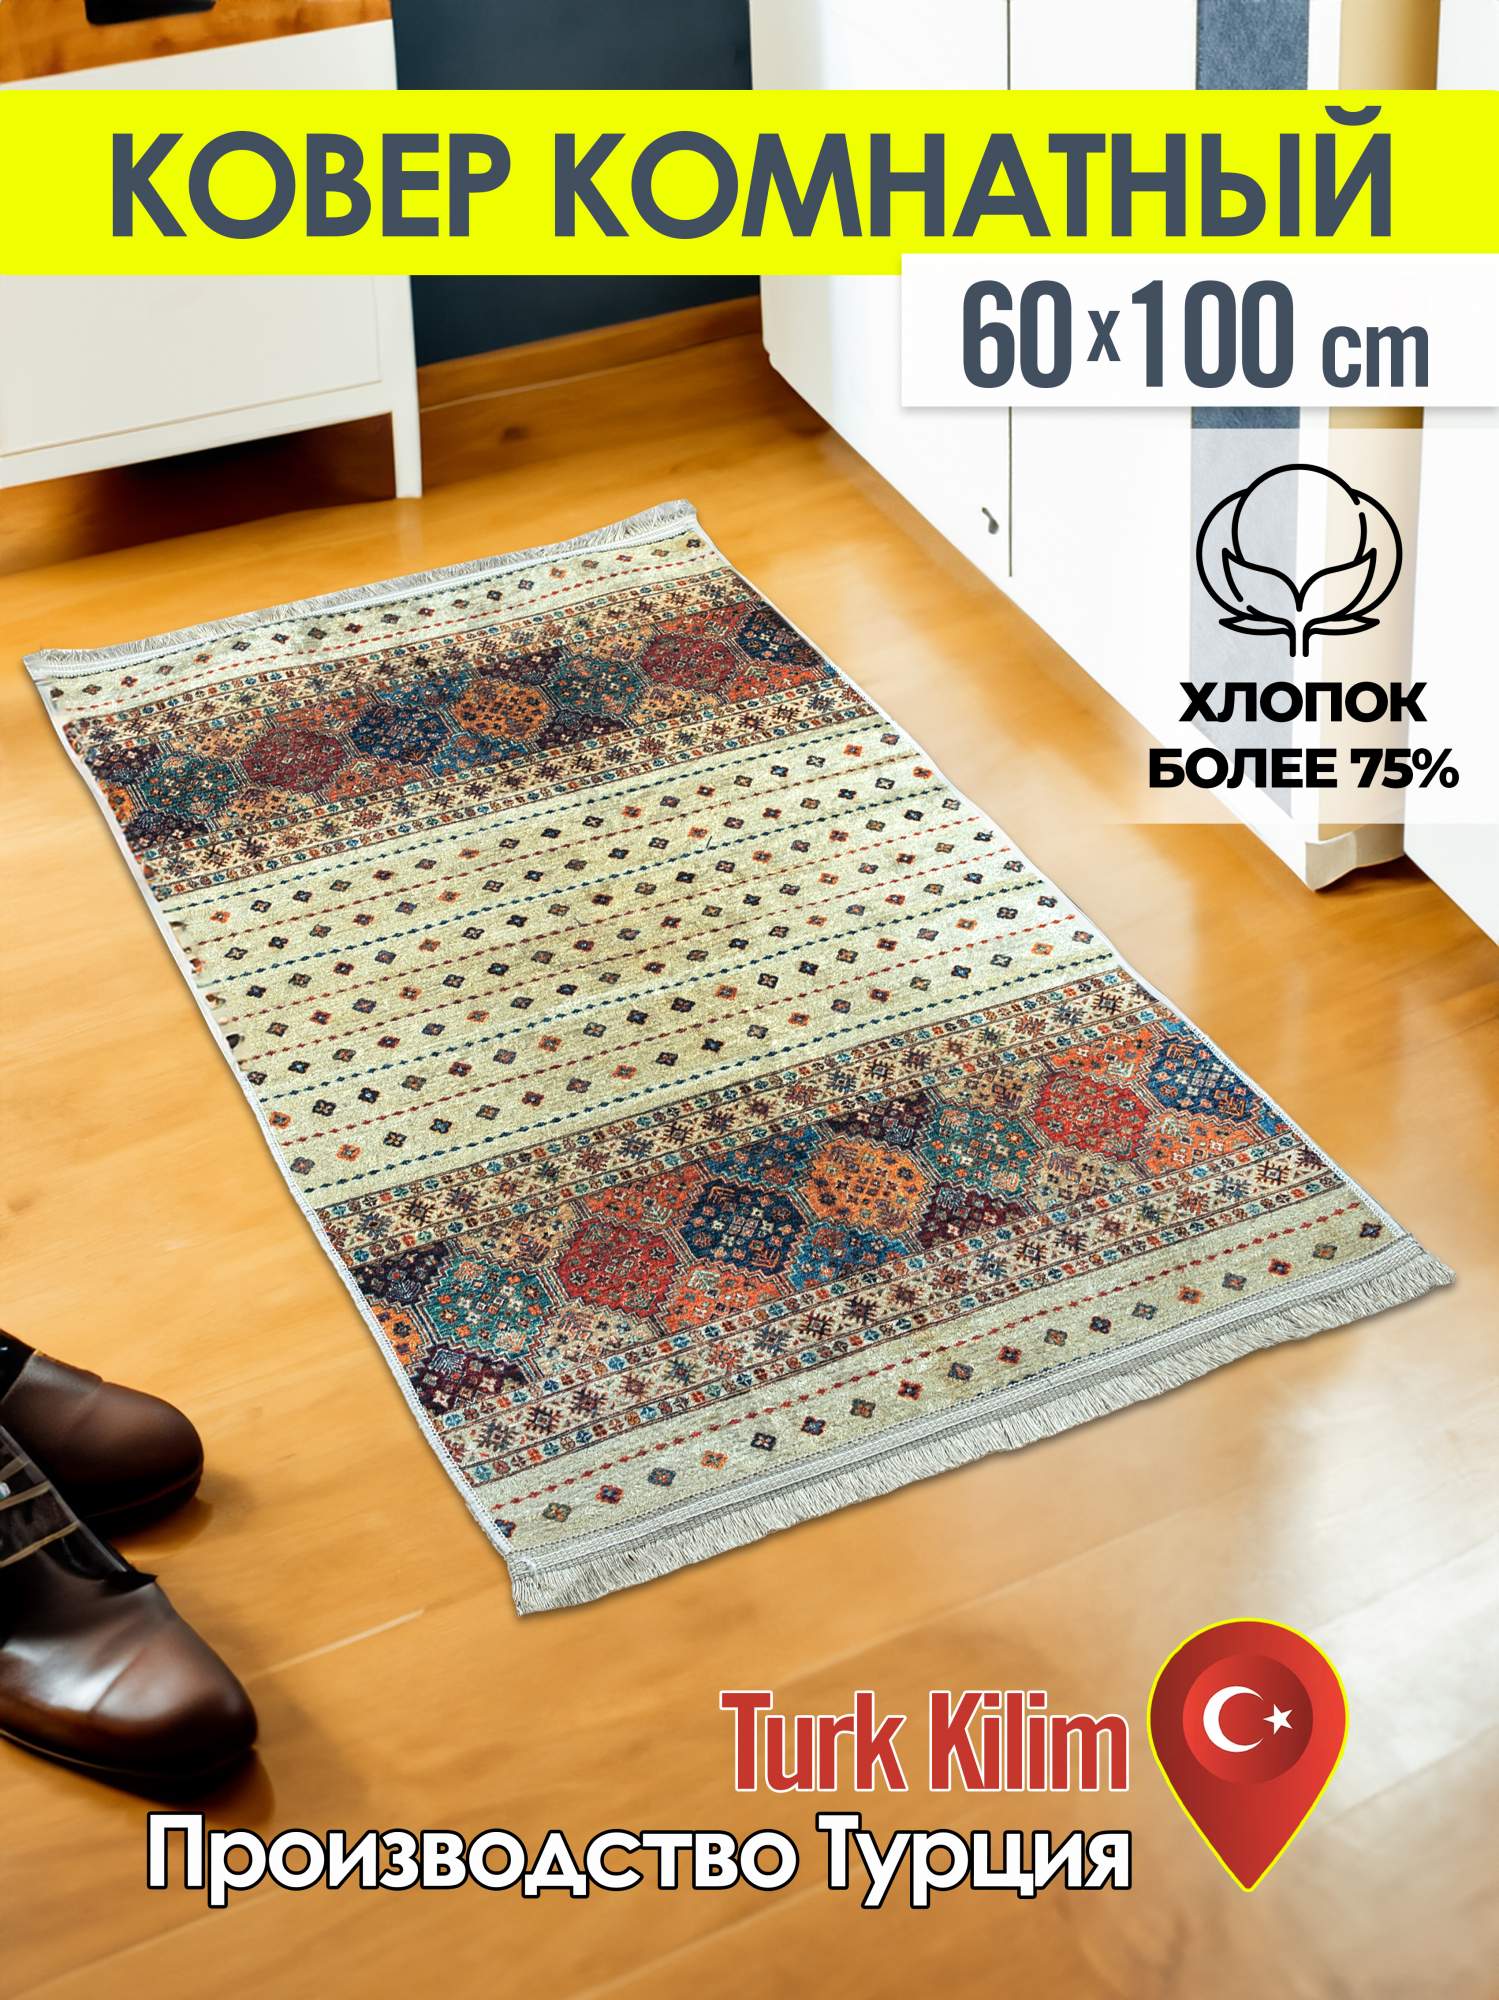 Ковёр турецкий комнатный Turk- kilim 60x100 4054A